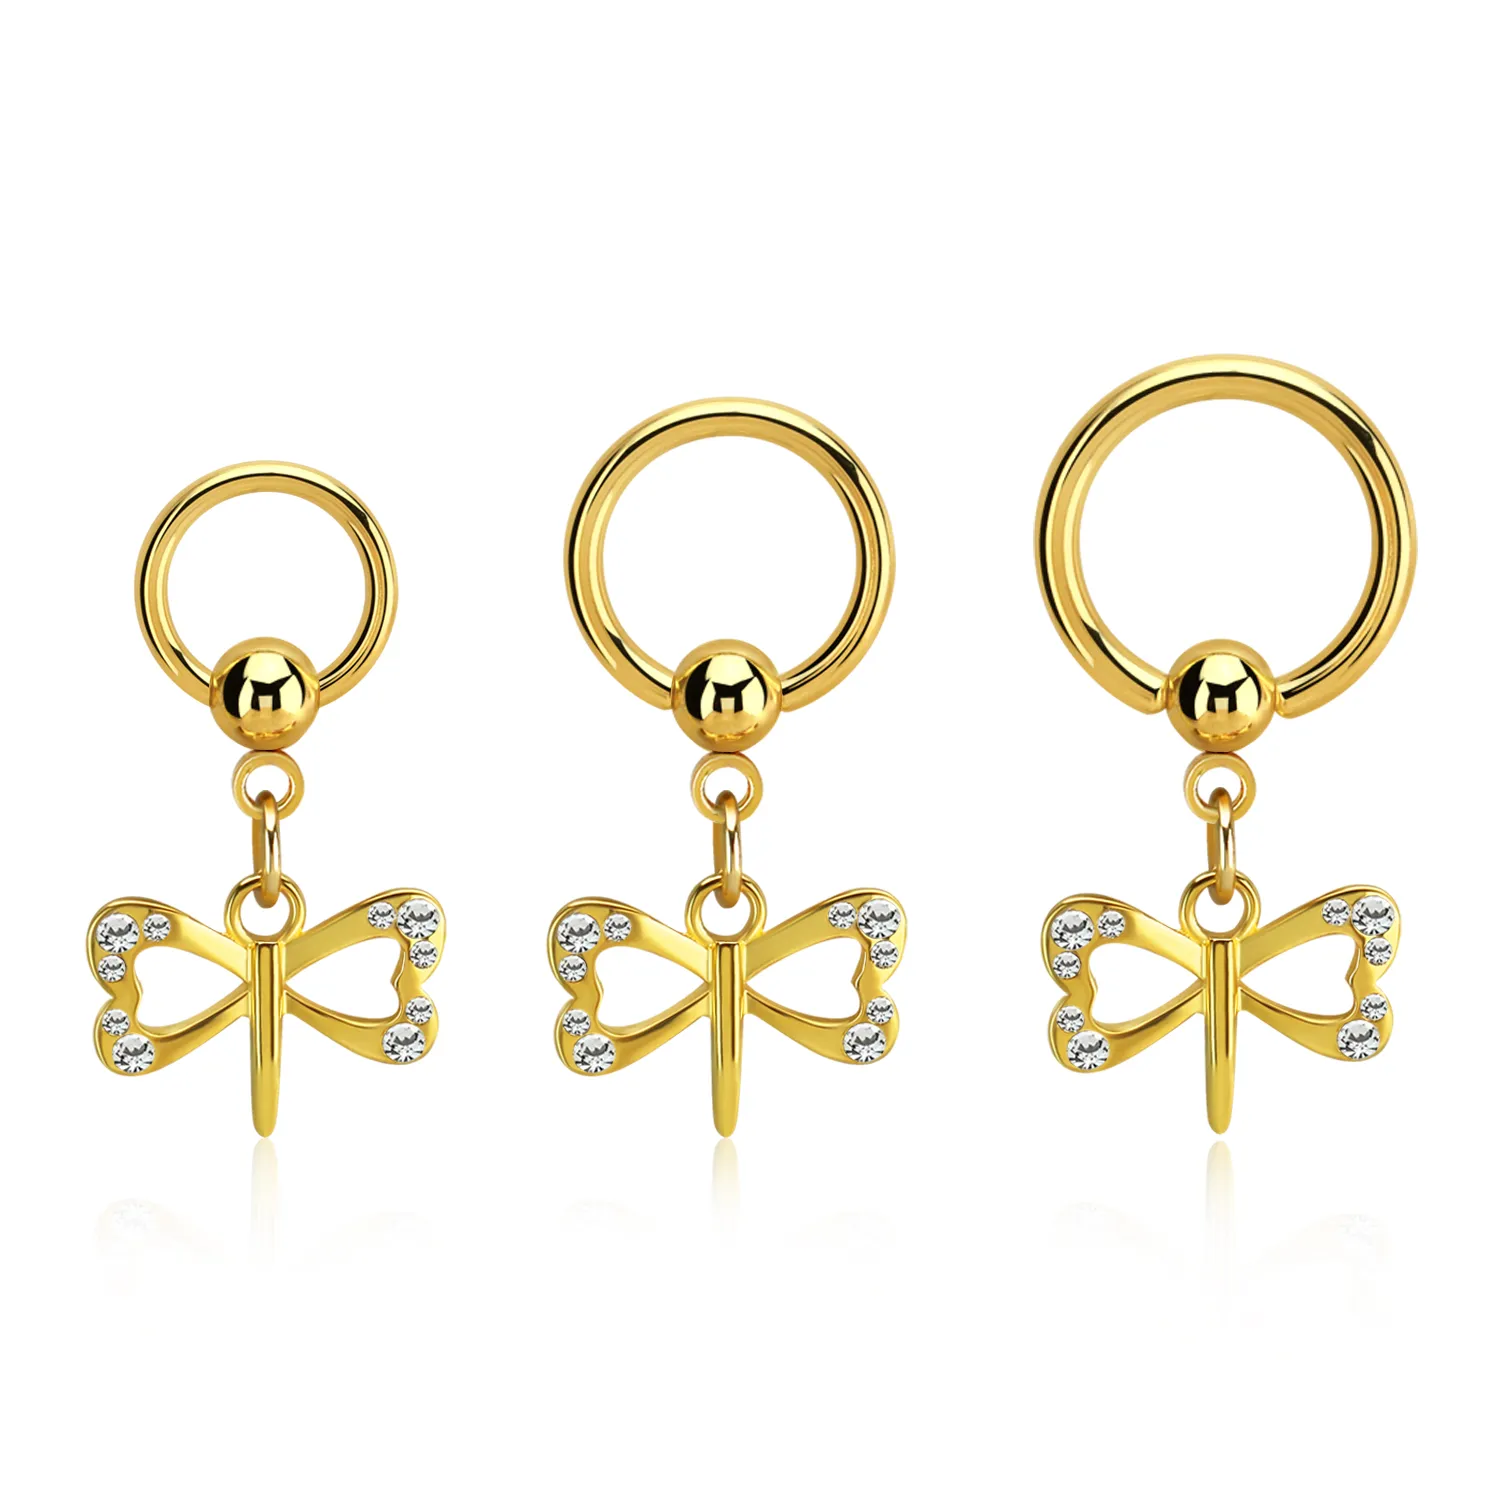 🦚 Brustpiercing Nipple Piercing Ring goldfarbig mit Motivanhänger Libelle